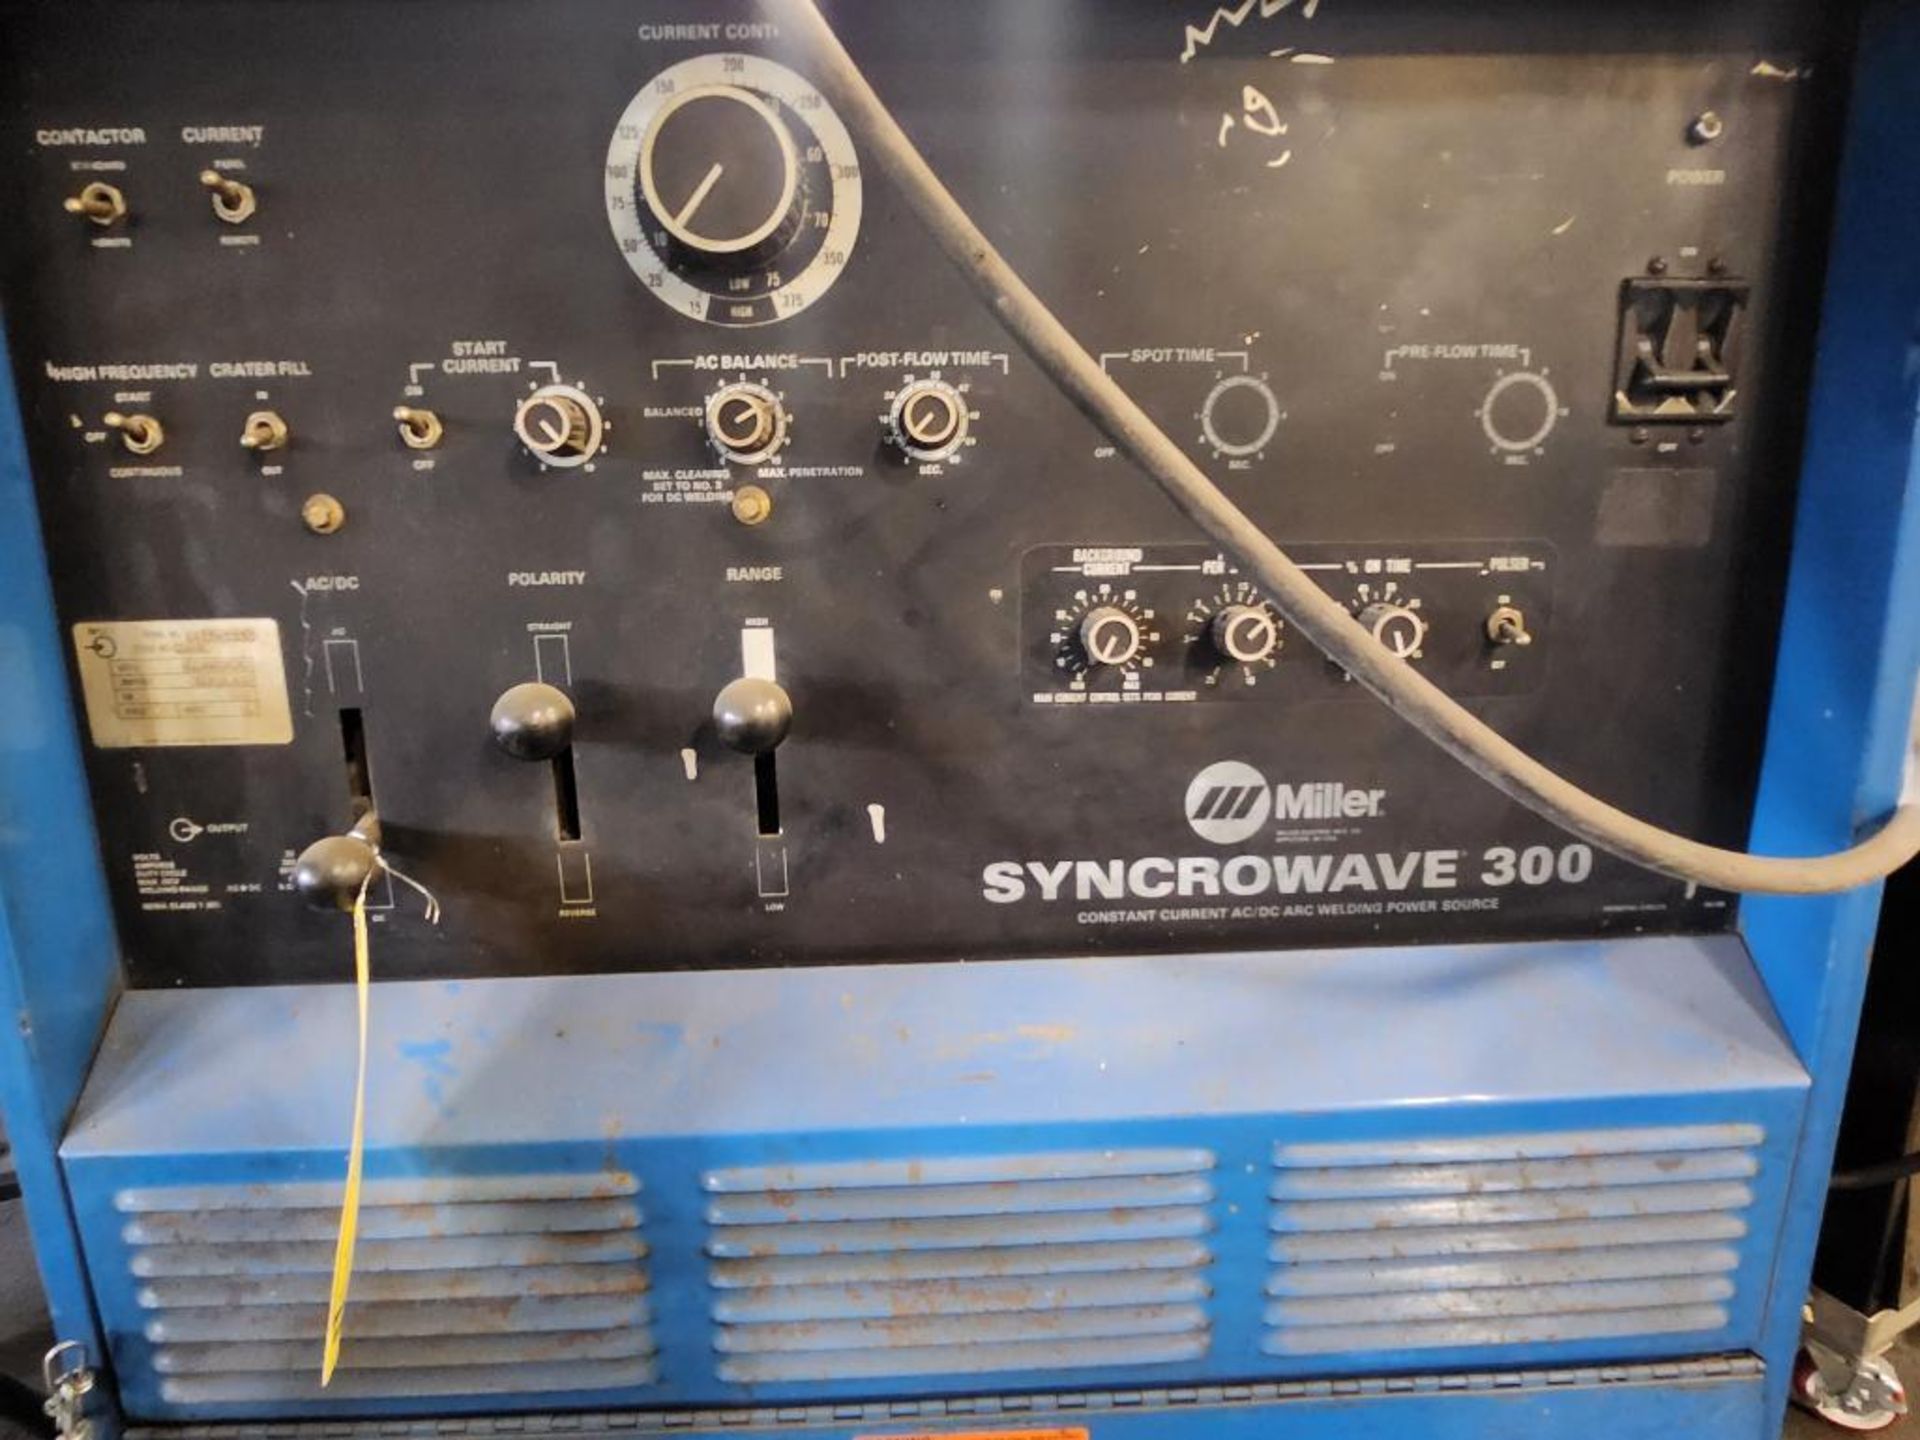 Miller Syncrowave 300 TIG Welder, 200V/230V/460V, Single Phase, Model 902424, JJ325446 - Image 4 of 5